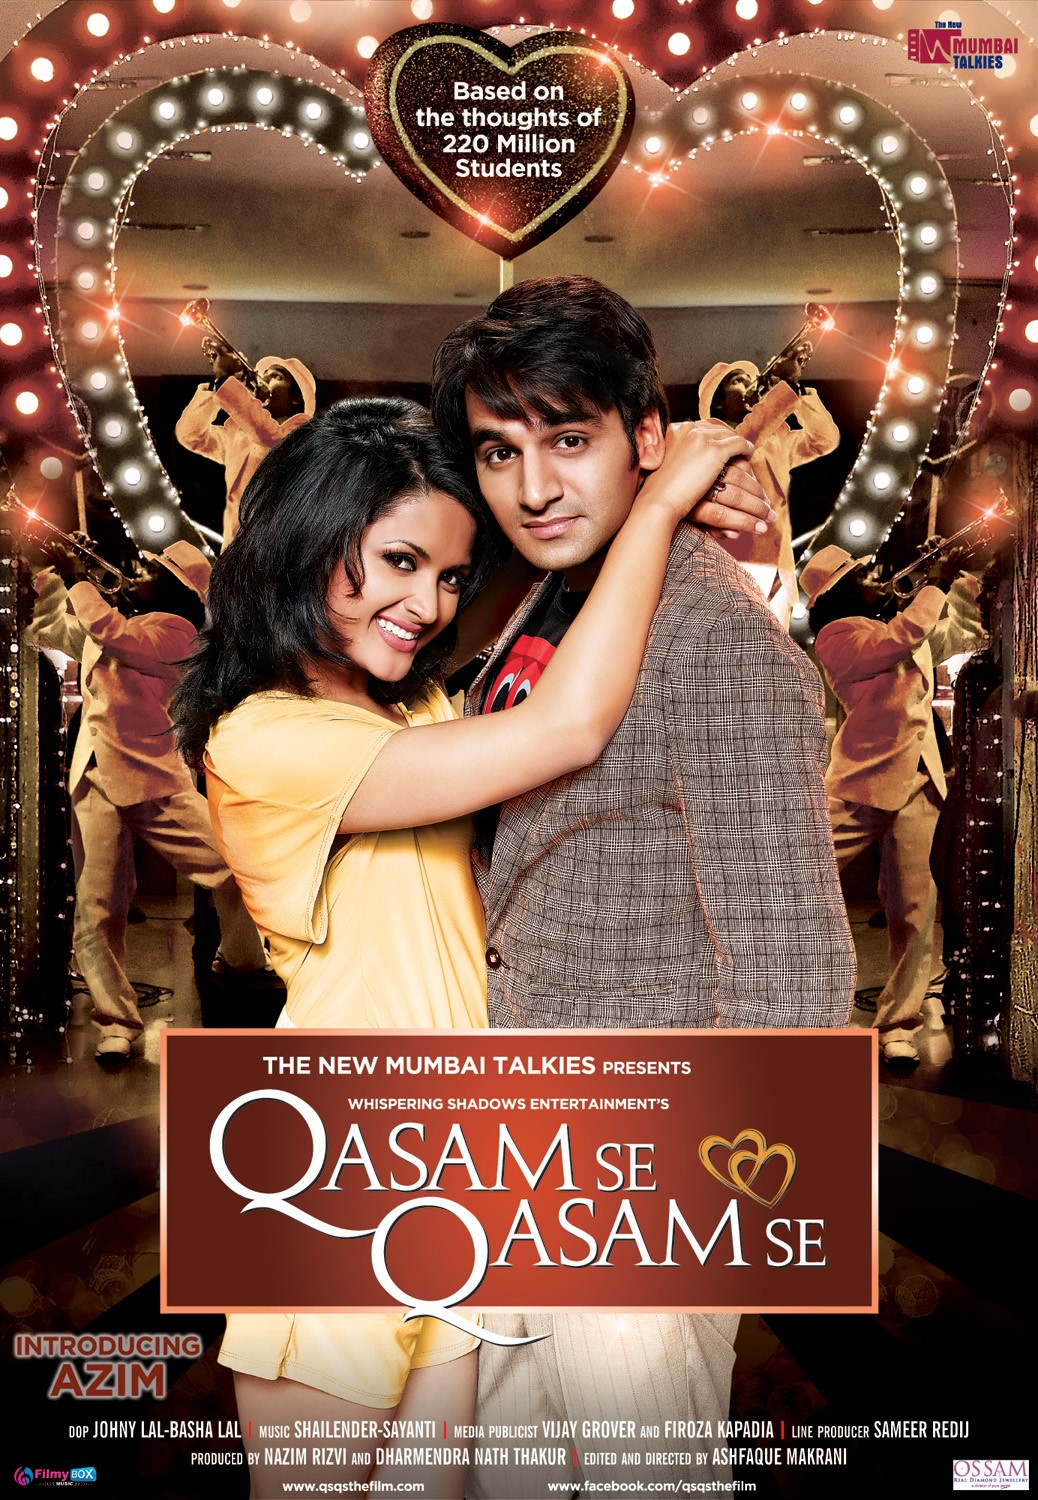 Extra Large Movie Poster Image for Qasam Se Qasam Se (#4 of 5)